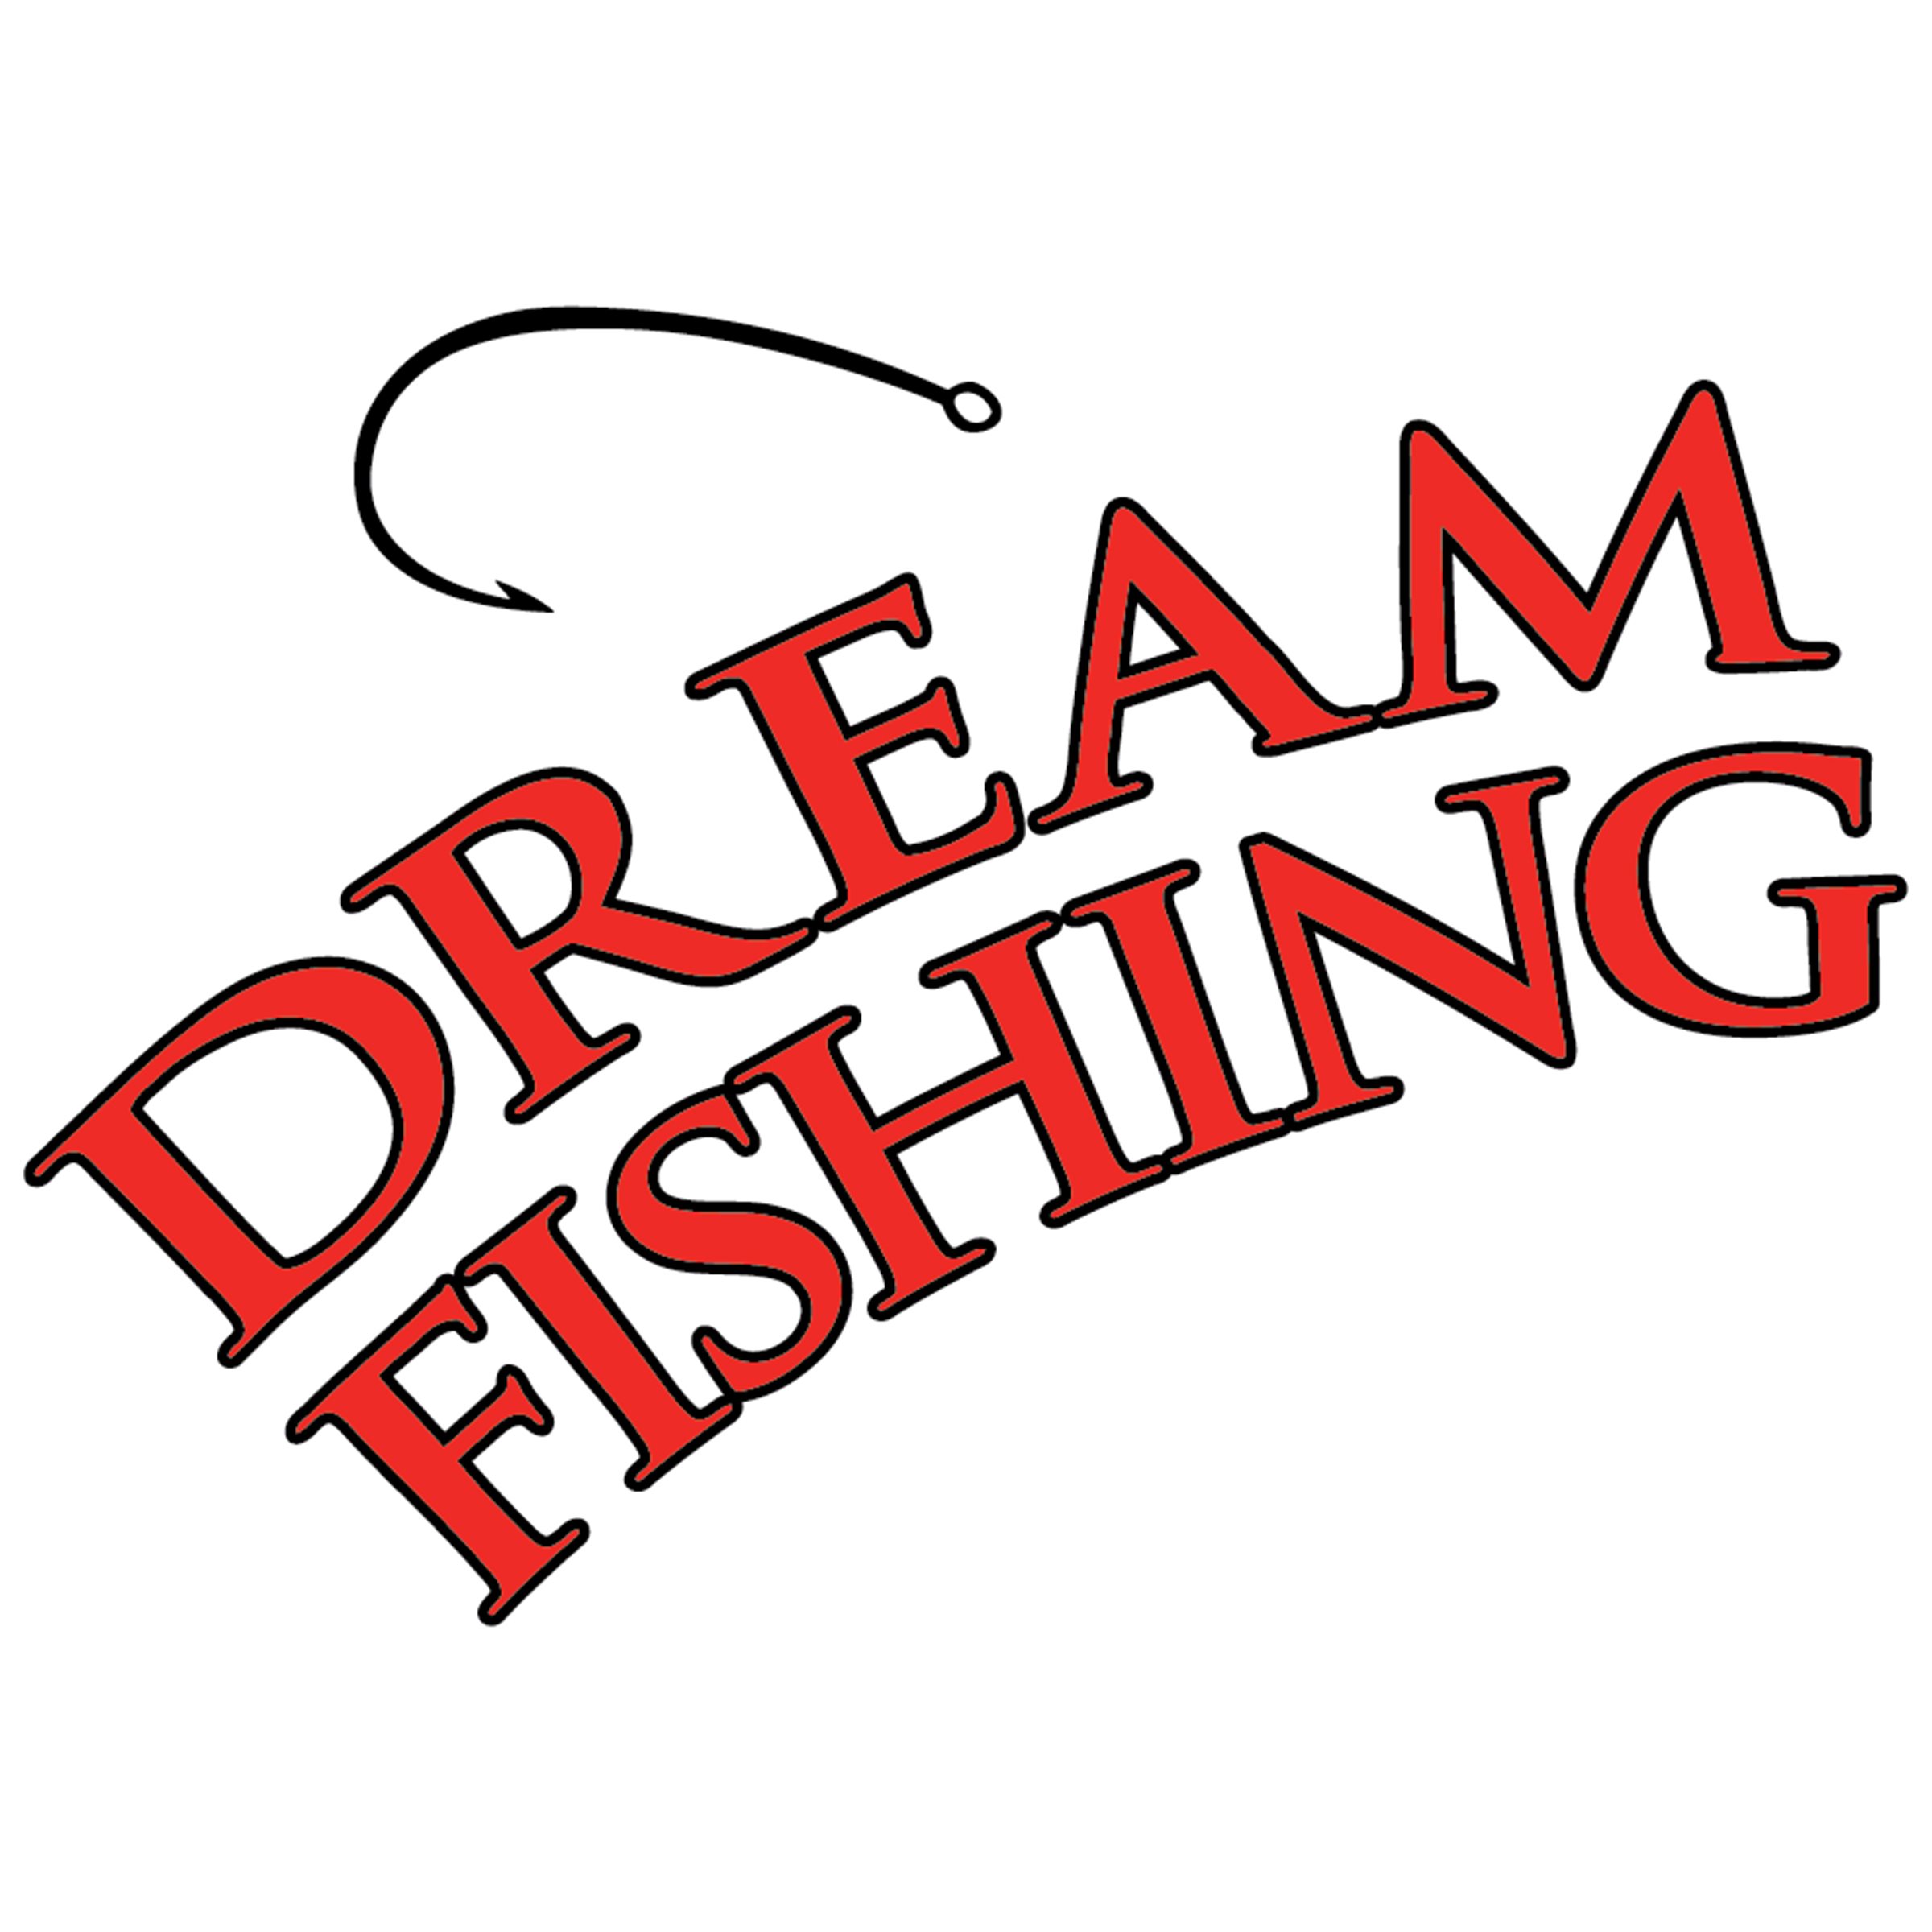 100-800-Dreamfishing